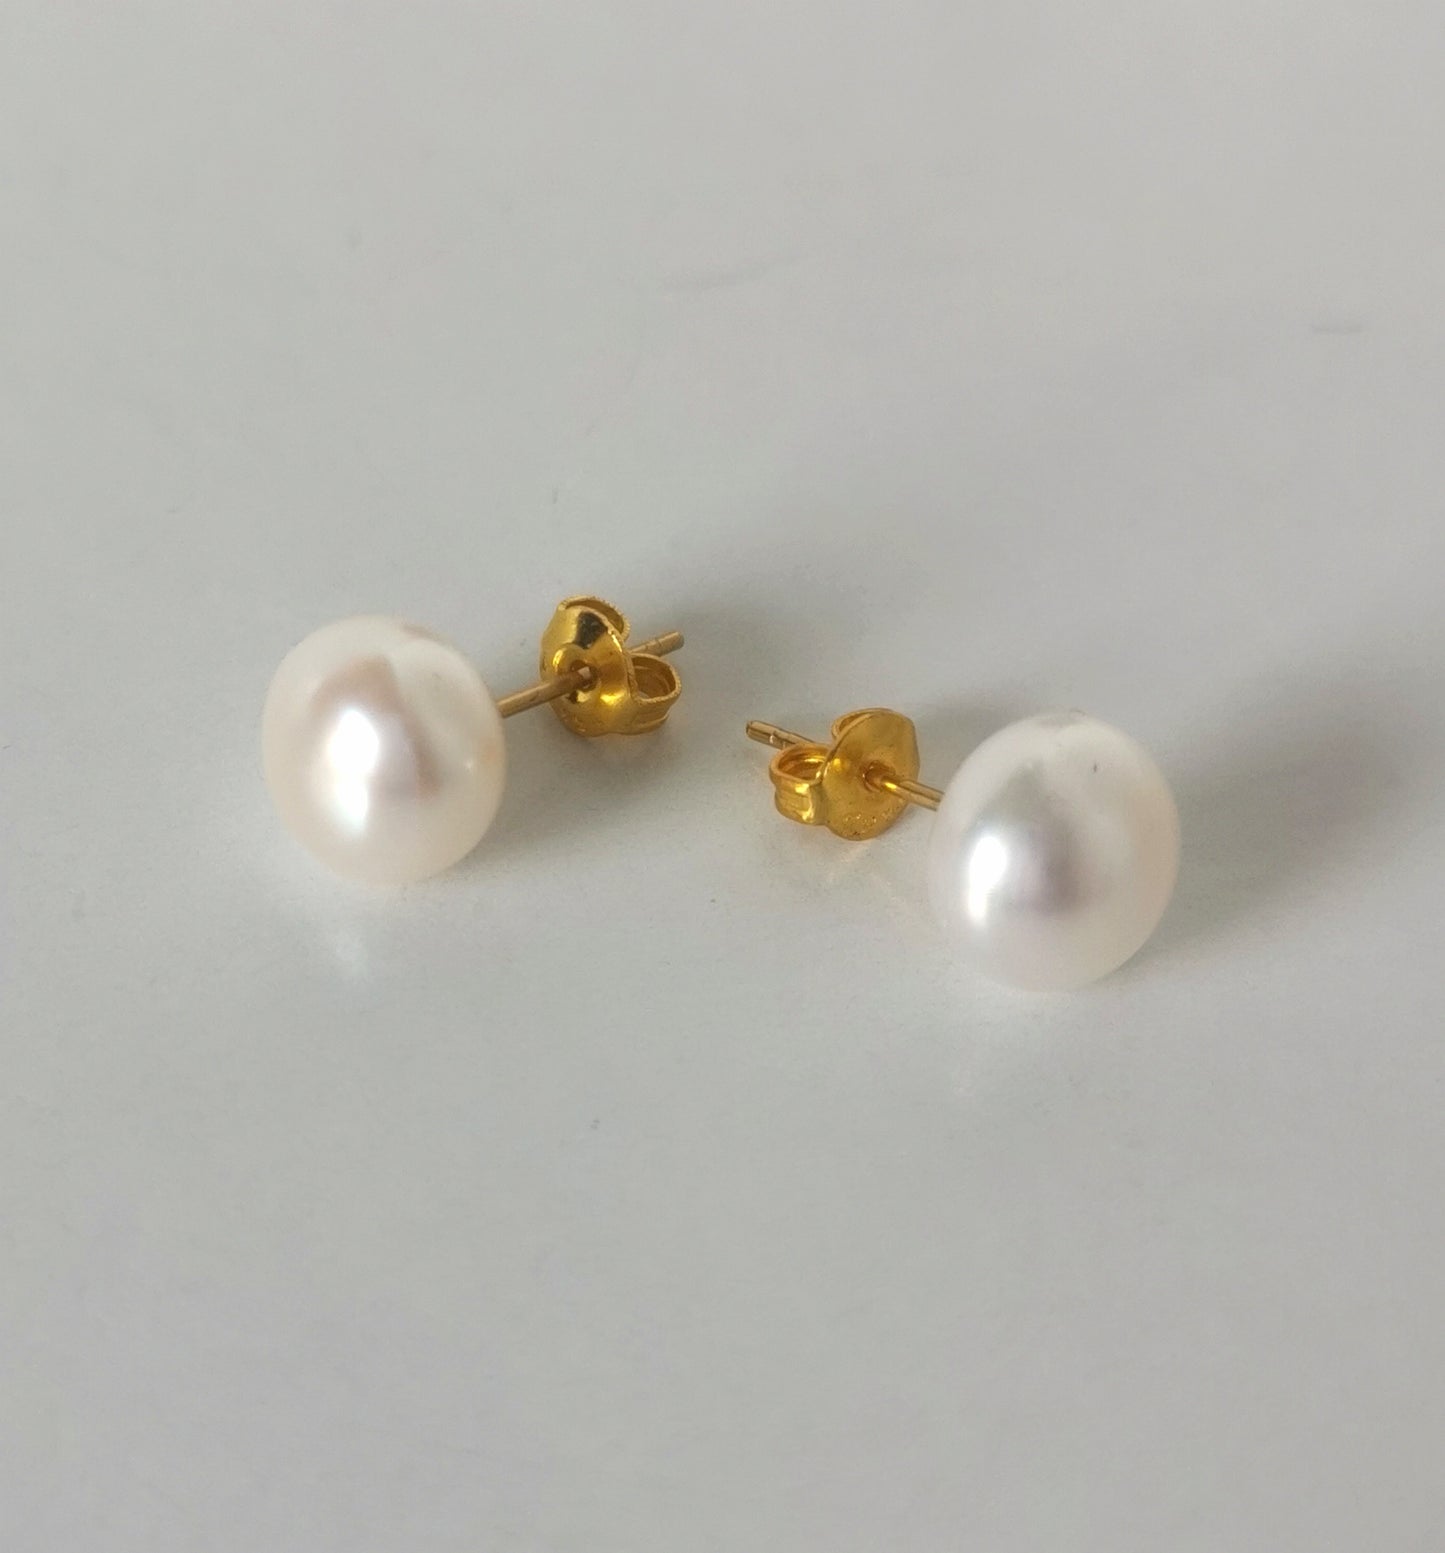 Boucles d'oreilles perles de culture blanches 9mm montées sur clous plaqués or. Présentées cote à cote, perles en bas, boucle de gauche inclinée vers la gauche, celle de droite vers la droite, posées sur un fond blanc. Vue de face.